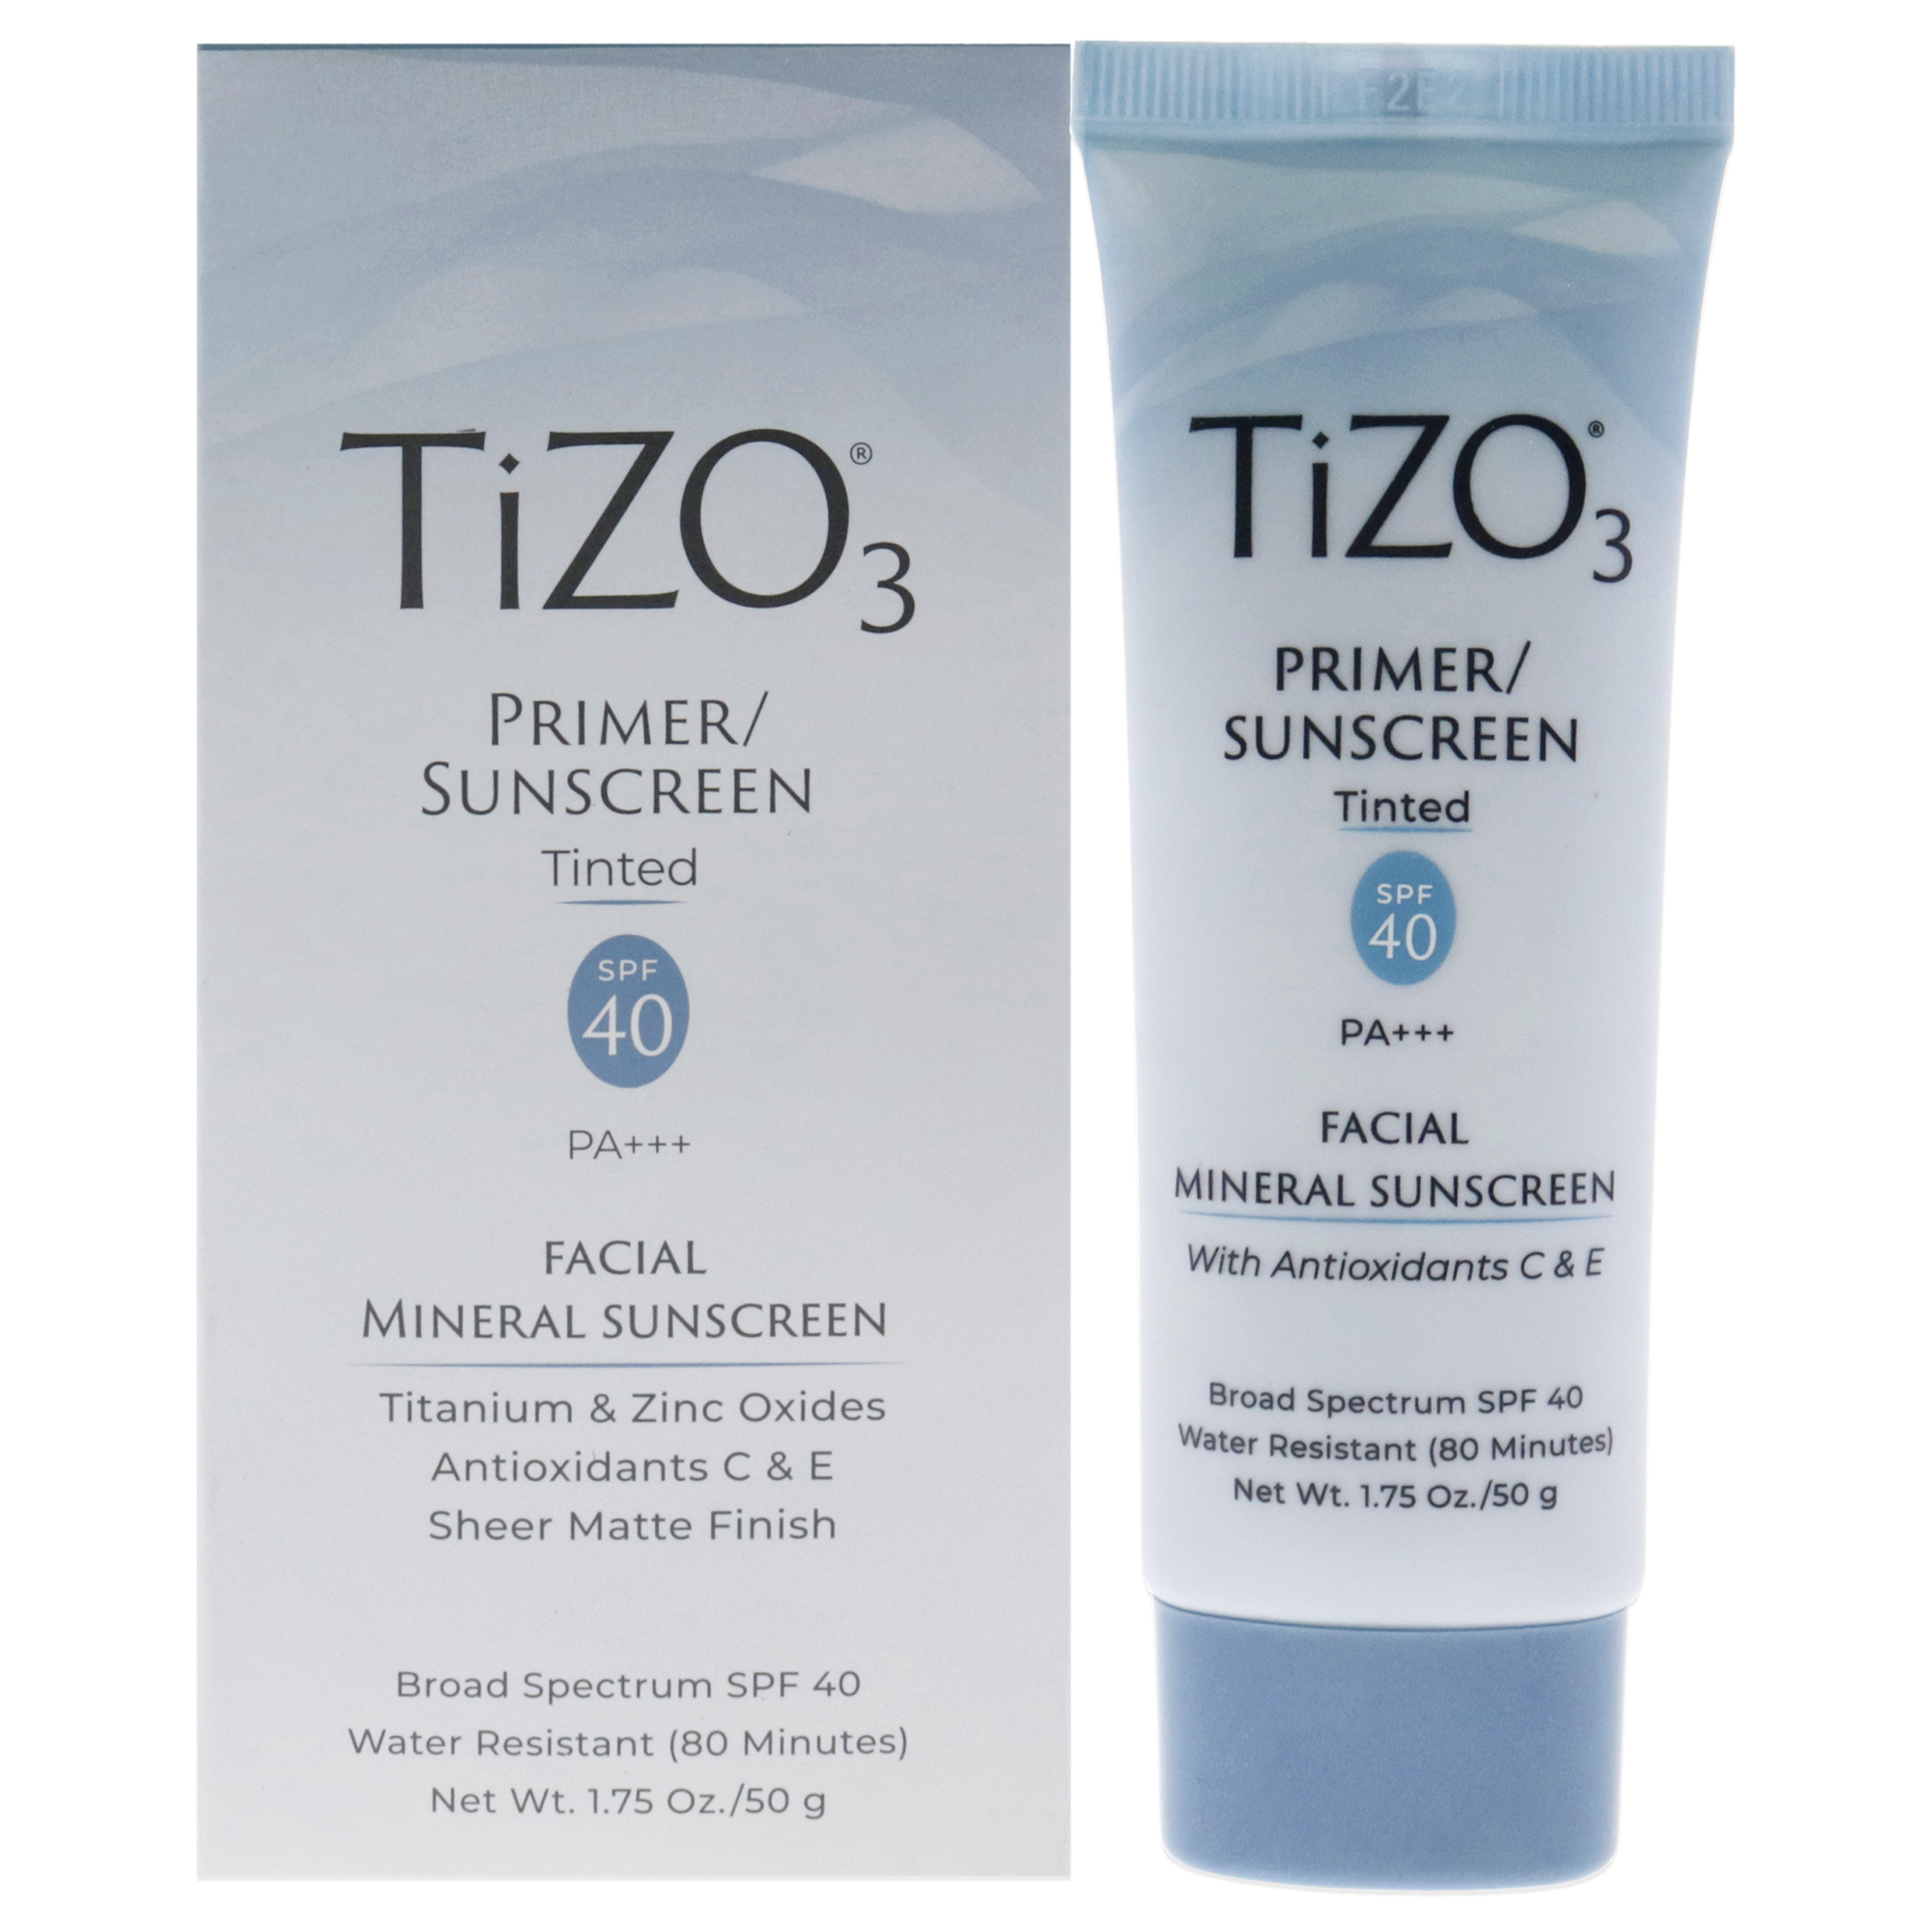 Tizo3 Facial Mineral Sunscreen SPF 40